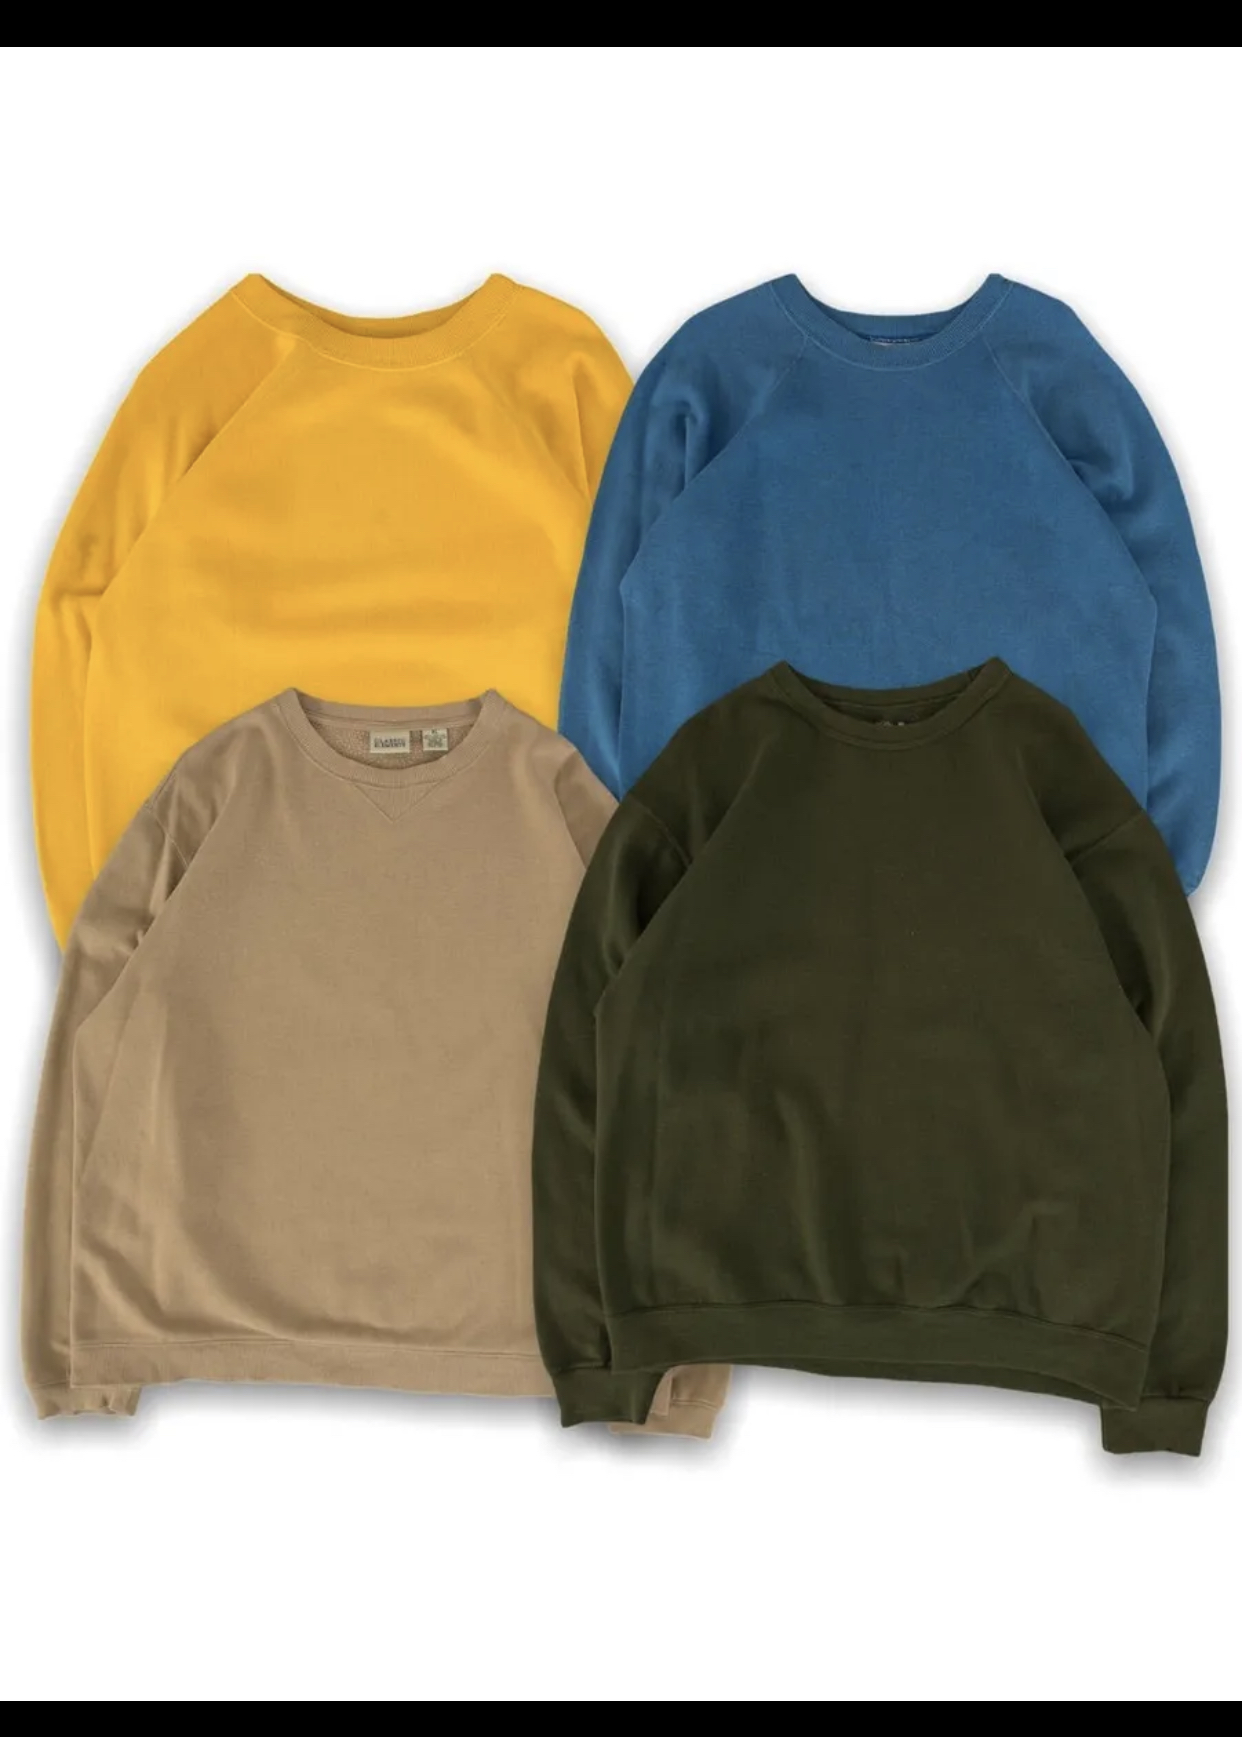 Vintage Plain Sweatshirt bundle